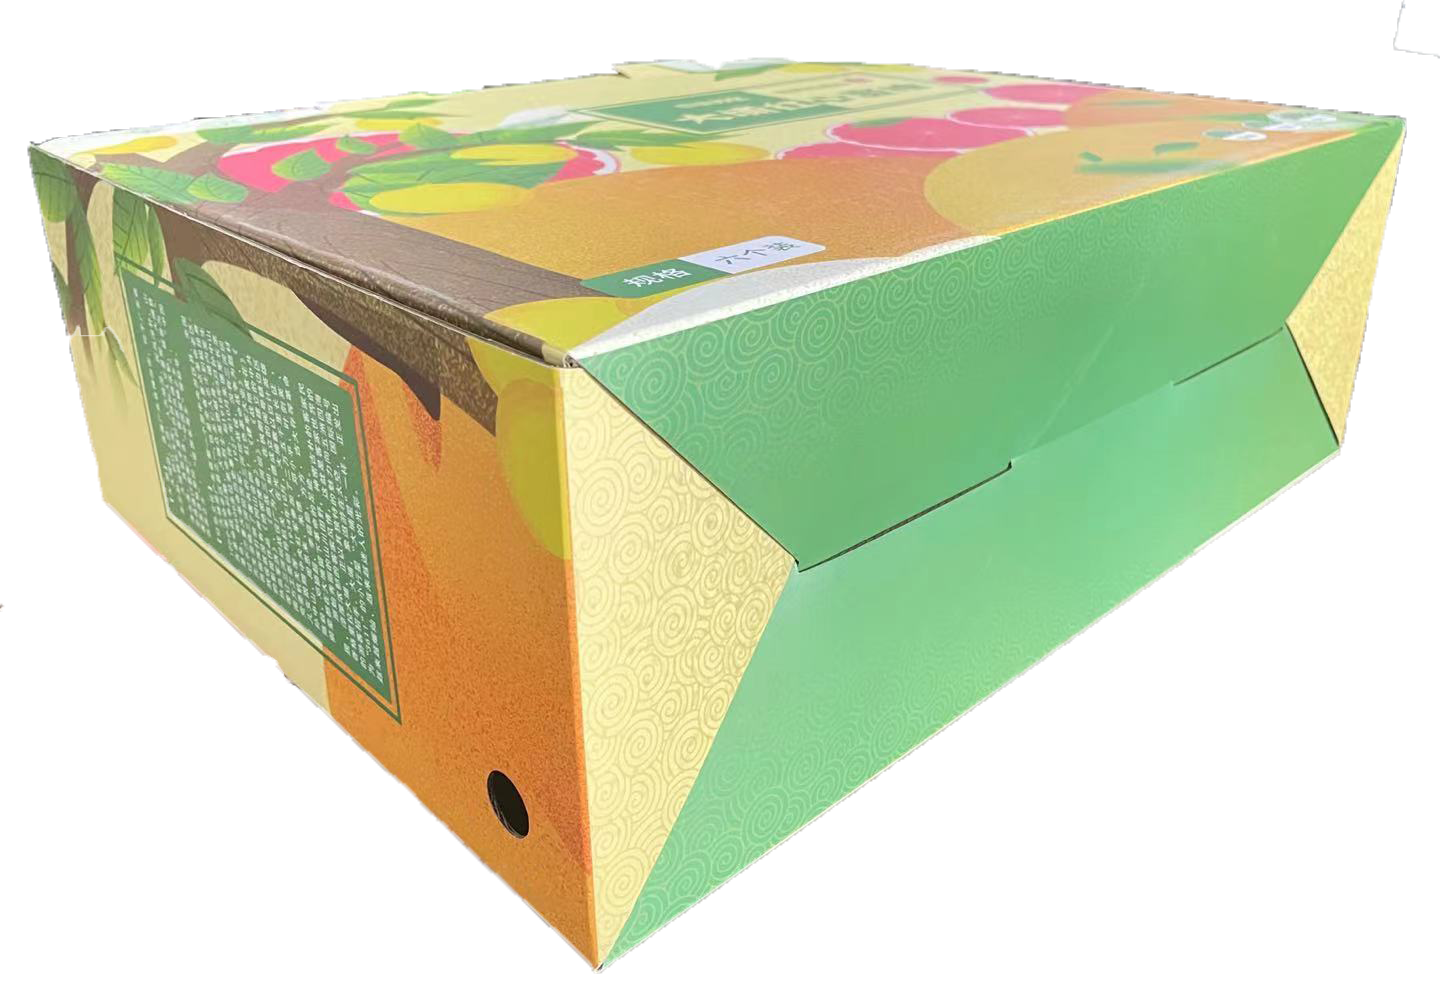 蜜柚包装彩盒2